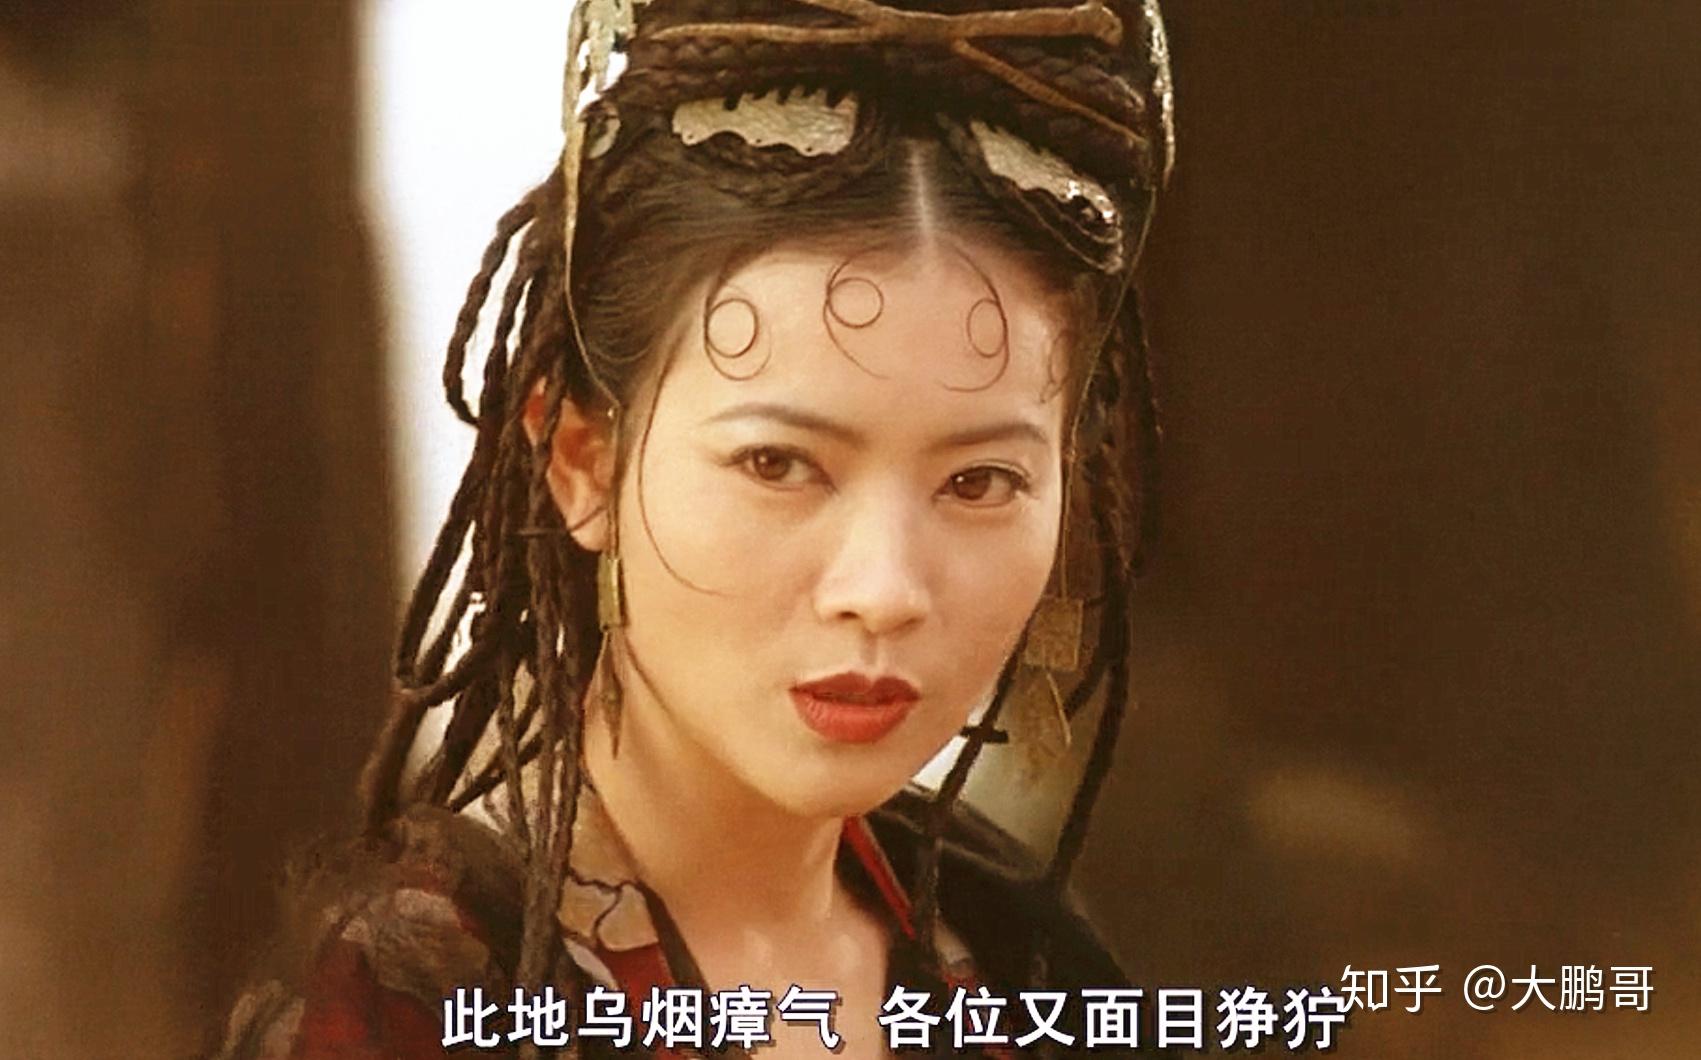 1995年的周星驰电影《大话西游之月光宝盒》,蓝洁瑛扮演的春十三娘